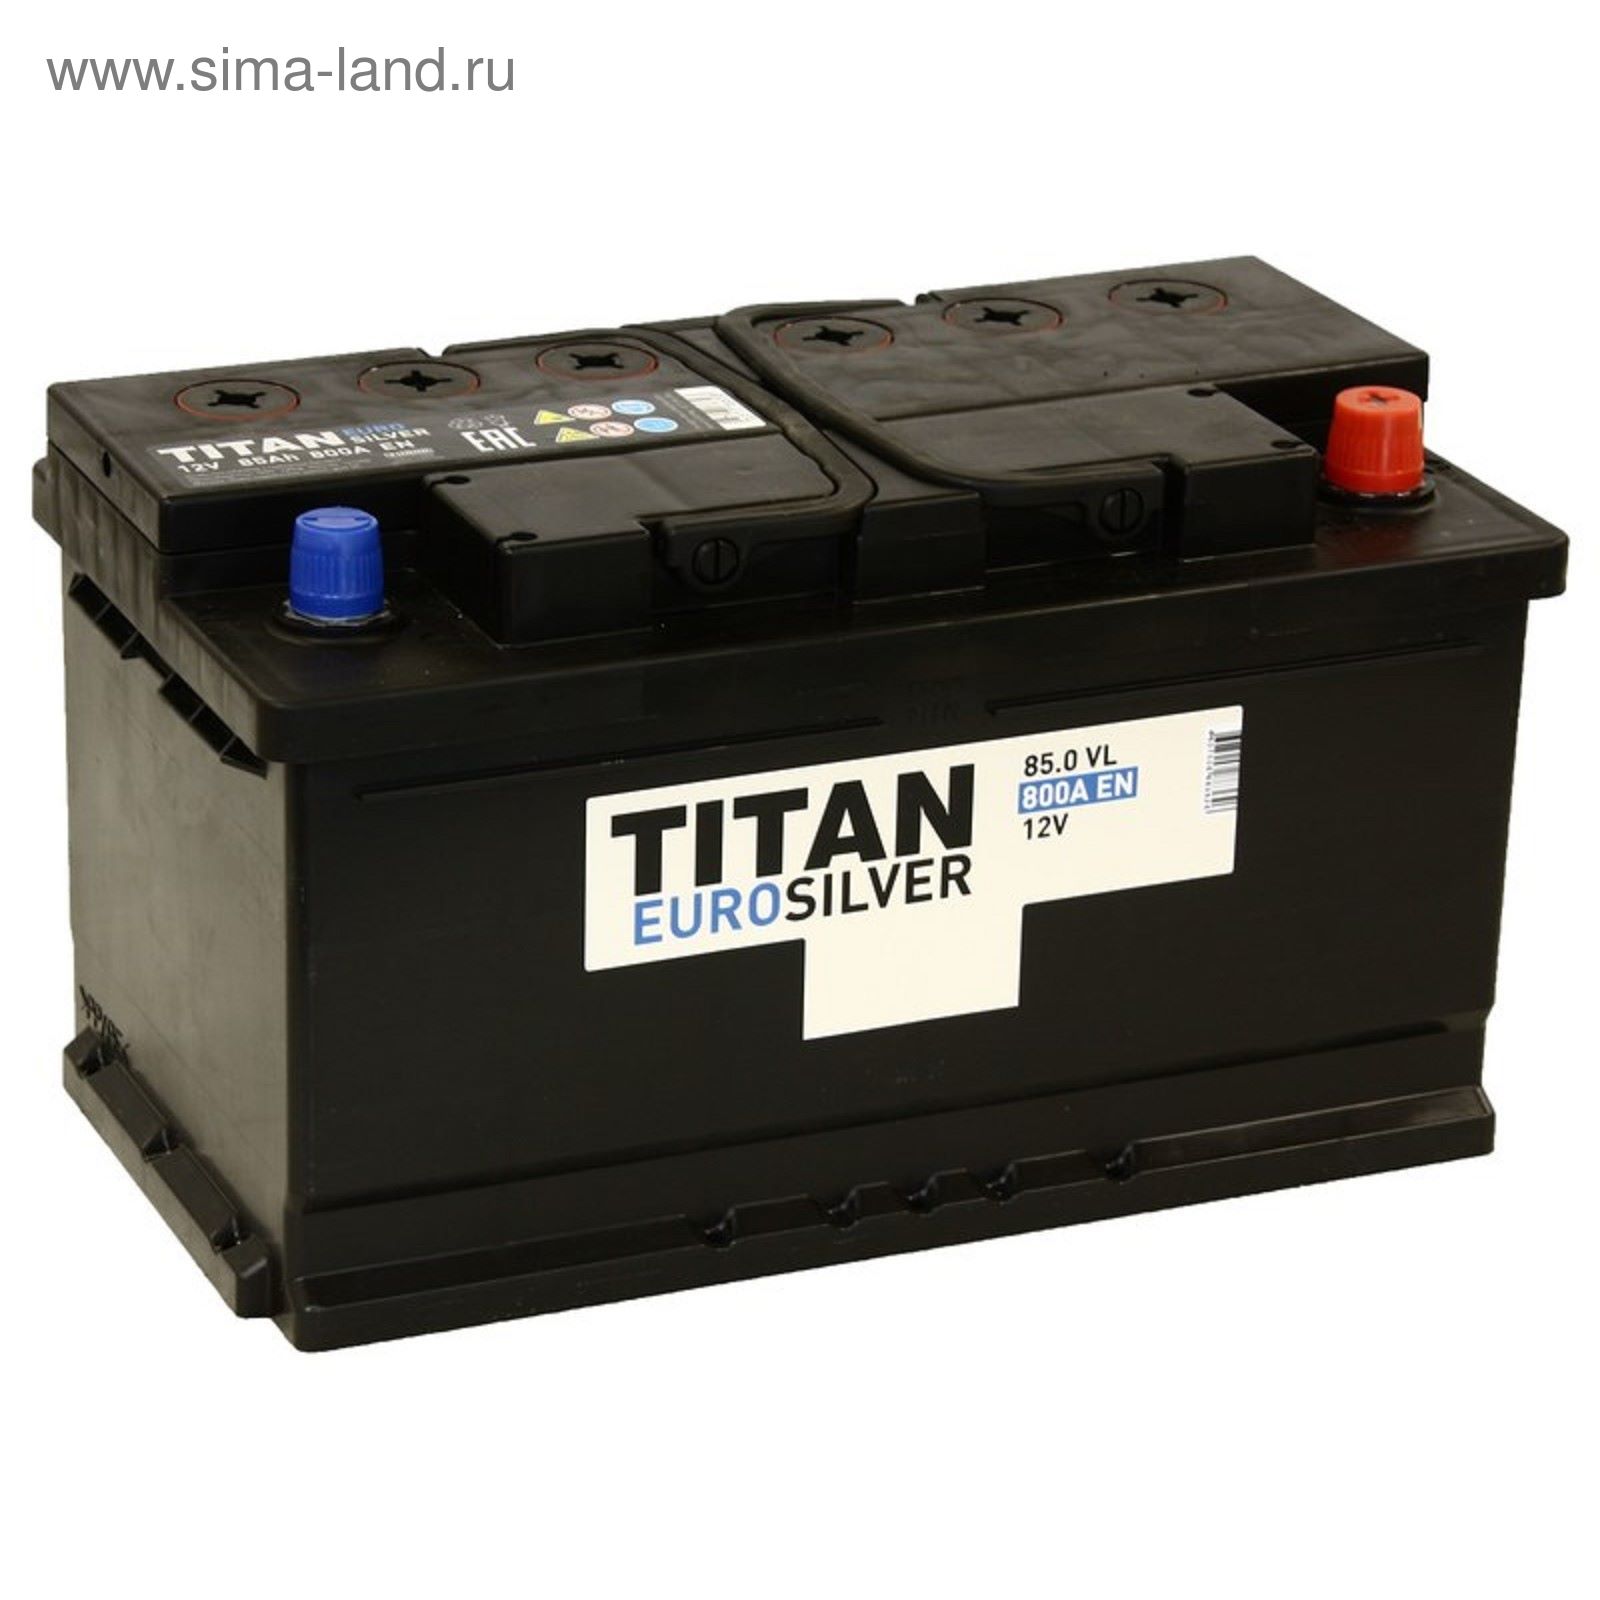 Аккумулятор легковых авто. АКБ Титан 12в. Титан 85 аккумулятор. Аккумулятор Titan EUROSILVER 6ct-85. Аккумулятор Titan EUROSILVER 6ст-85.0 VL (низкая).